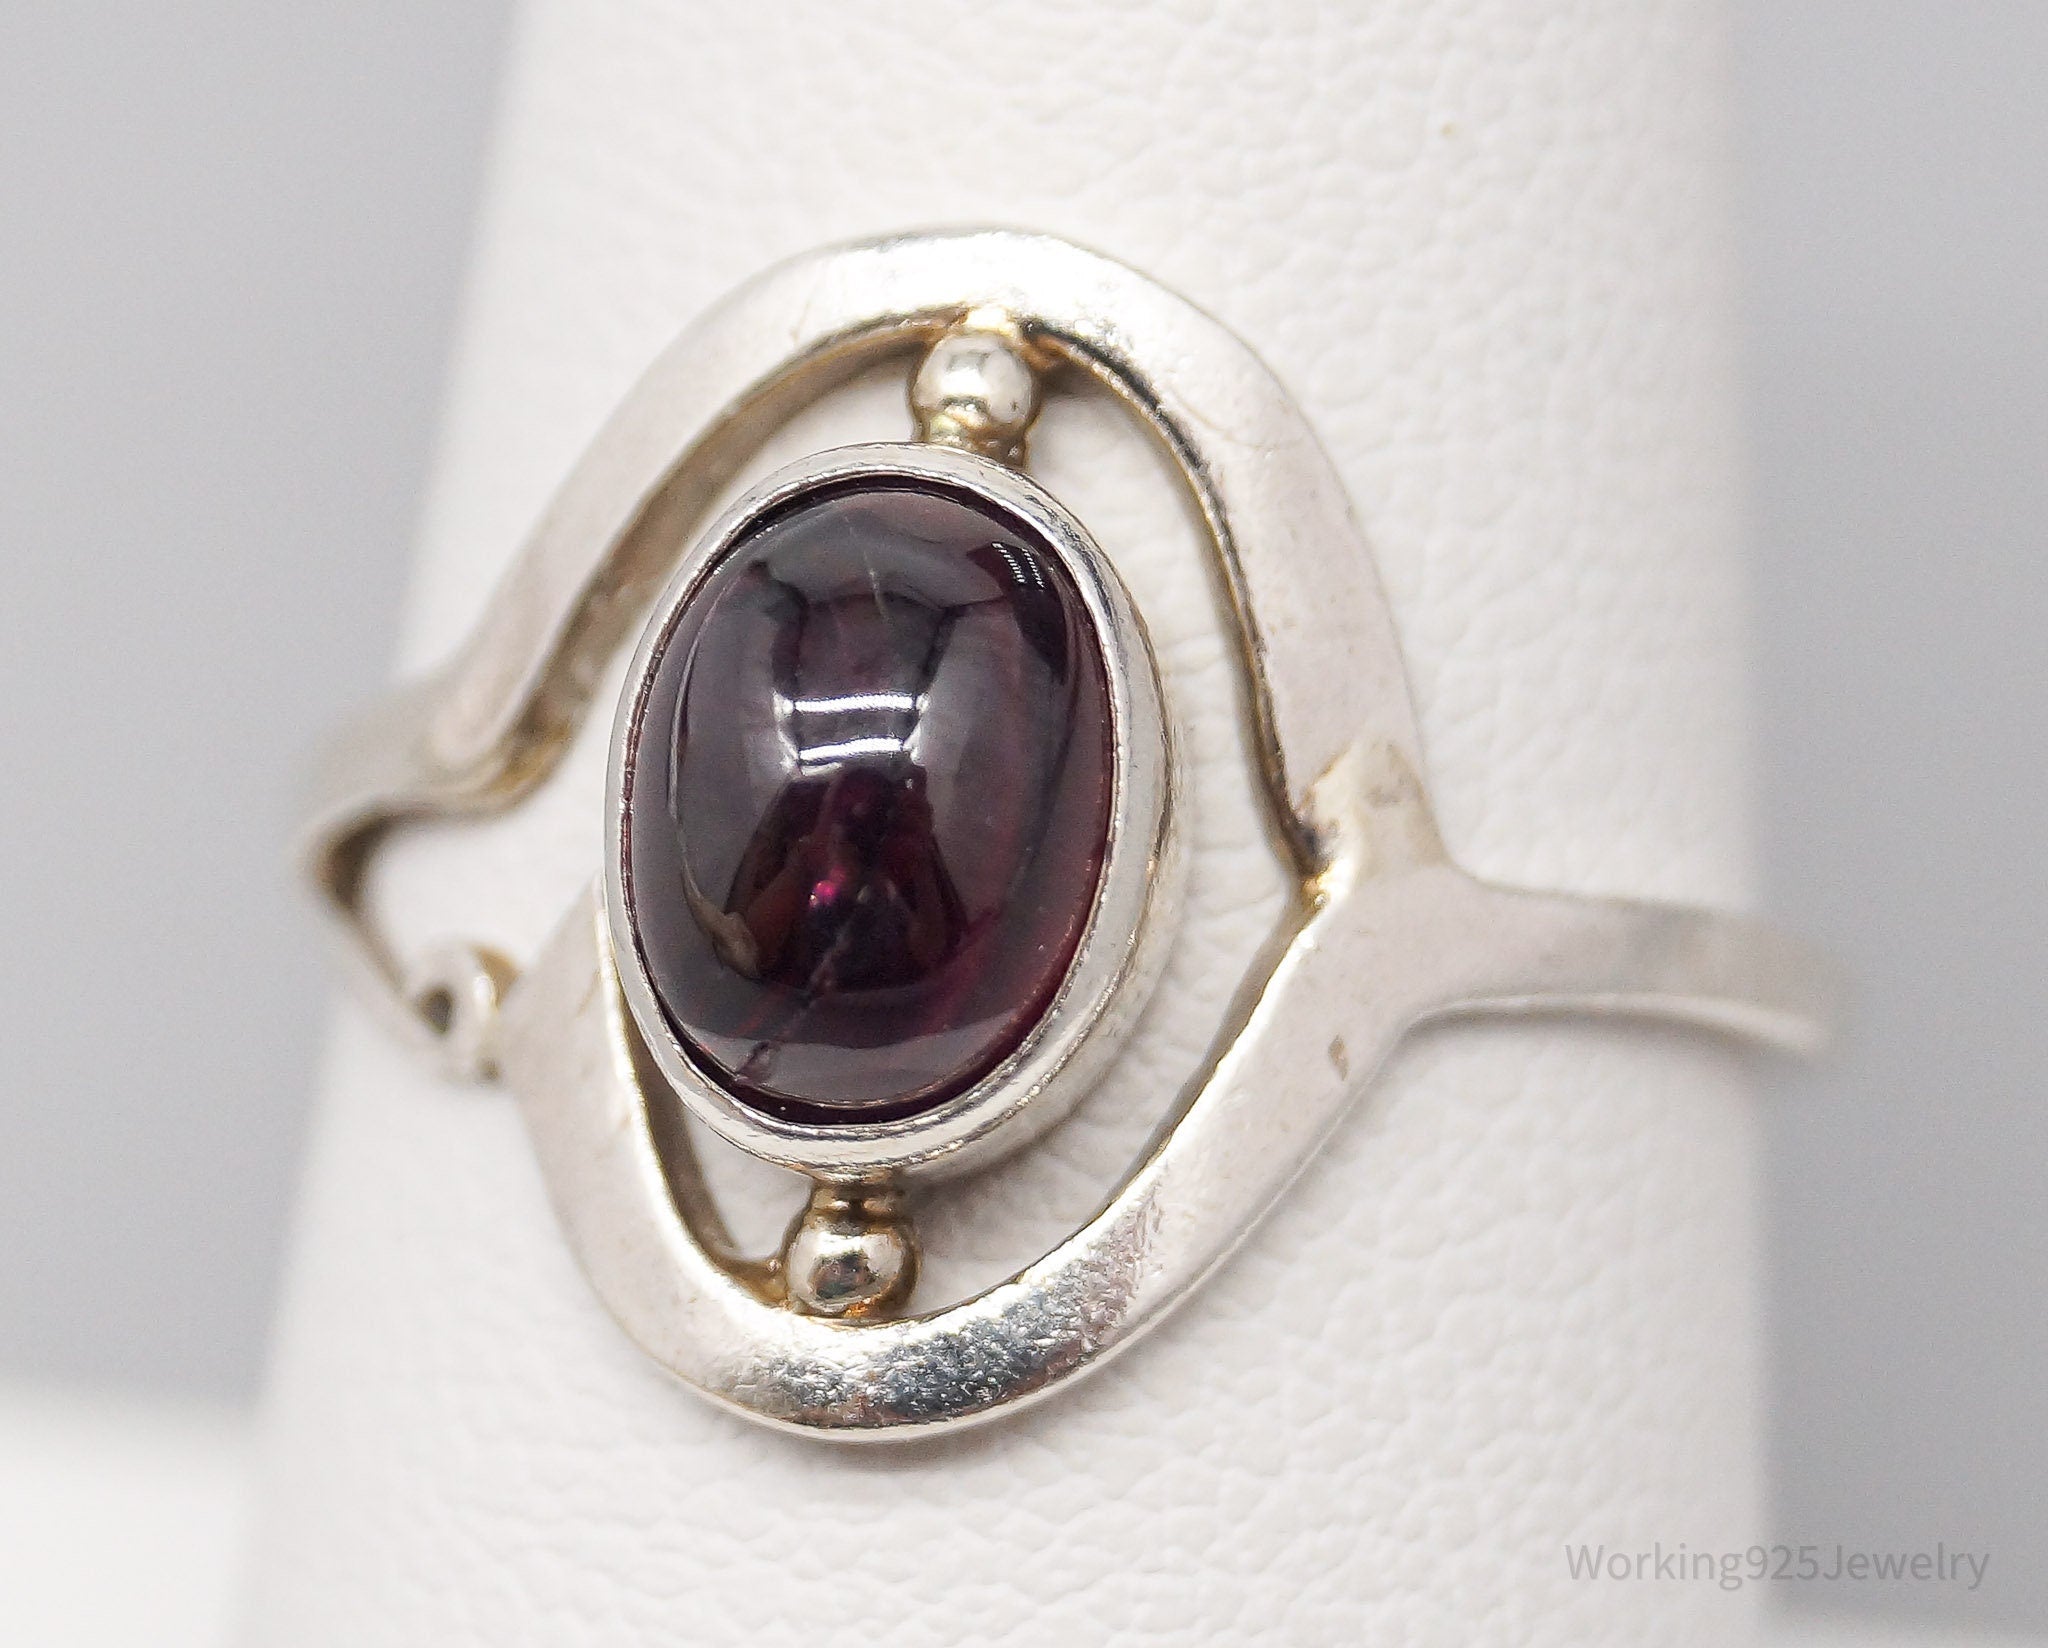 Vintage Rhodolite Garnet Sterling Silver Ring - Size 7.5